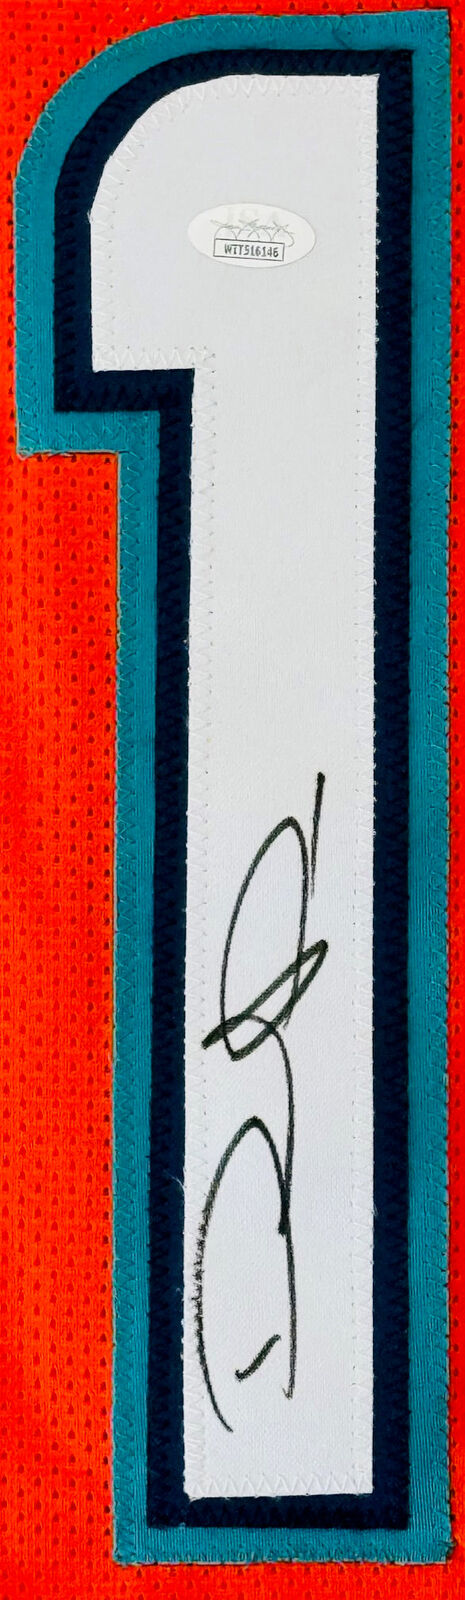 DeVante Parker Autographed Miami Dolphins Orange Jersey (JSA) Image 2